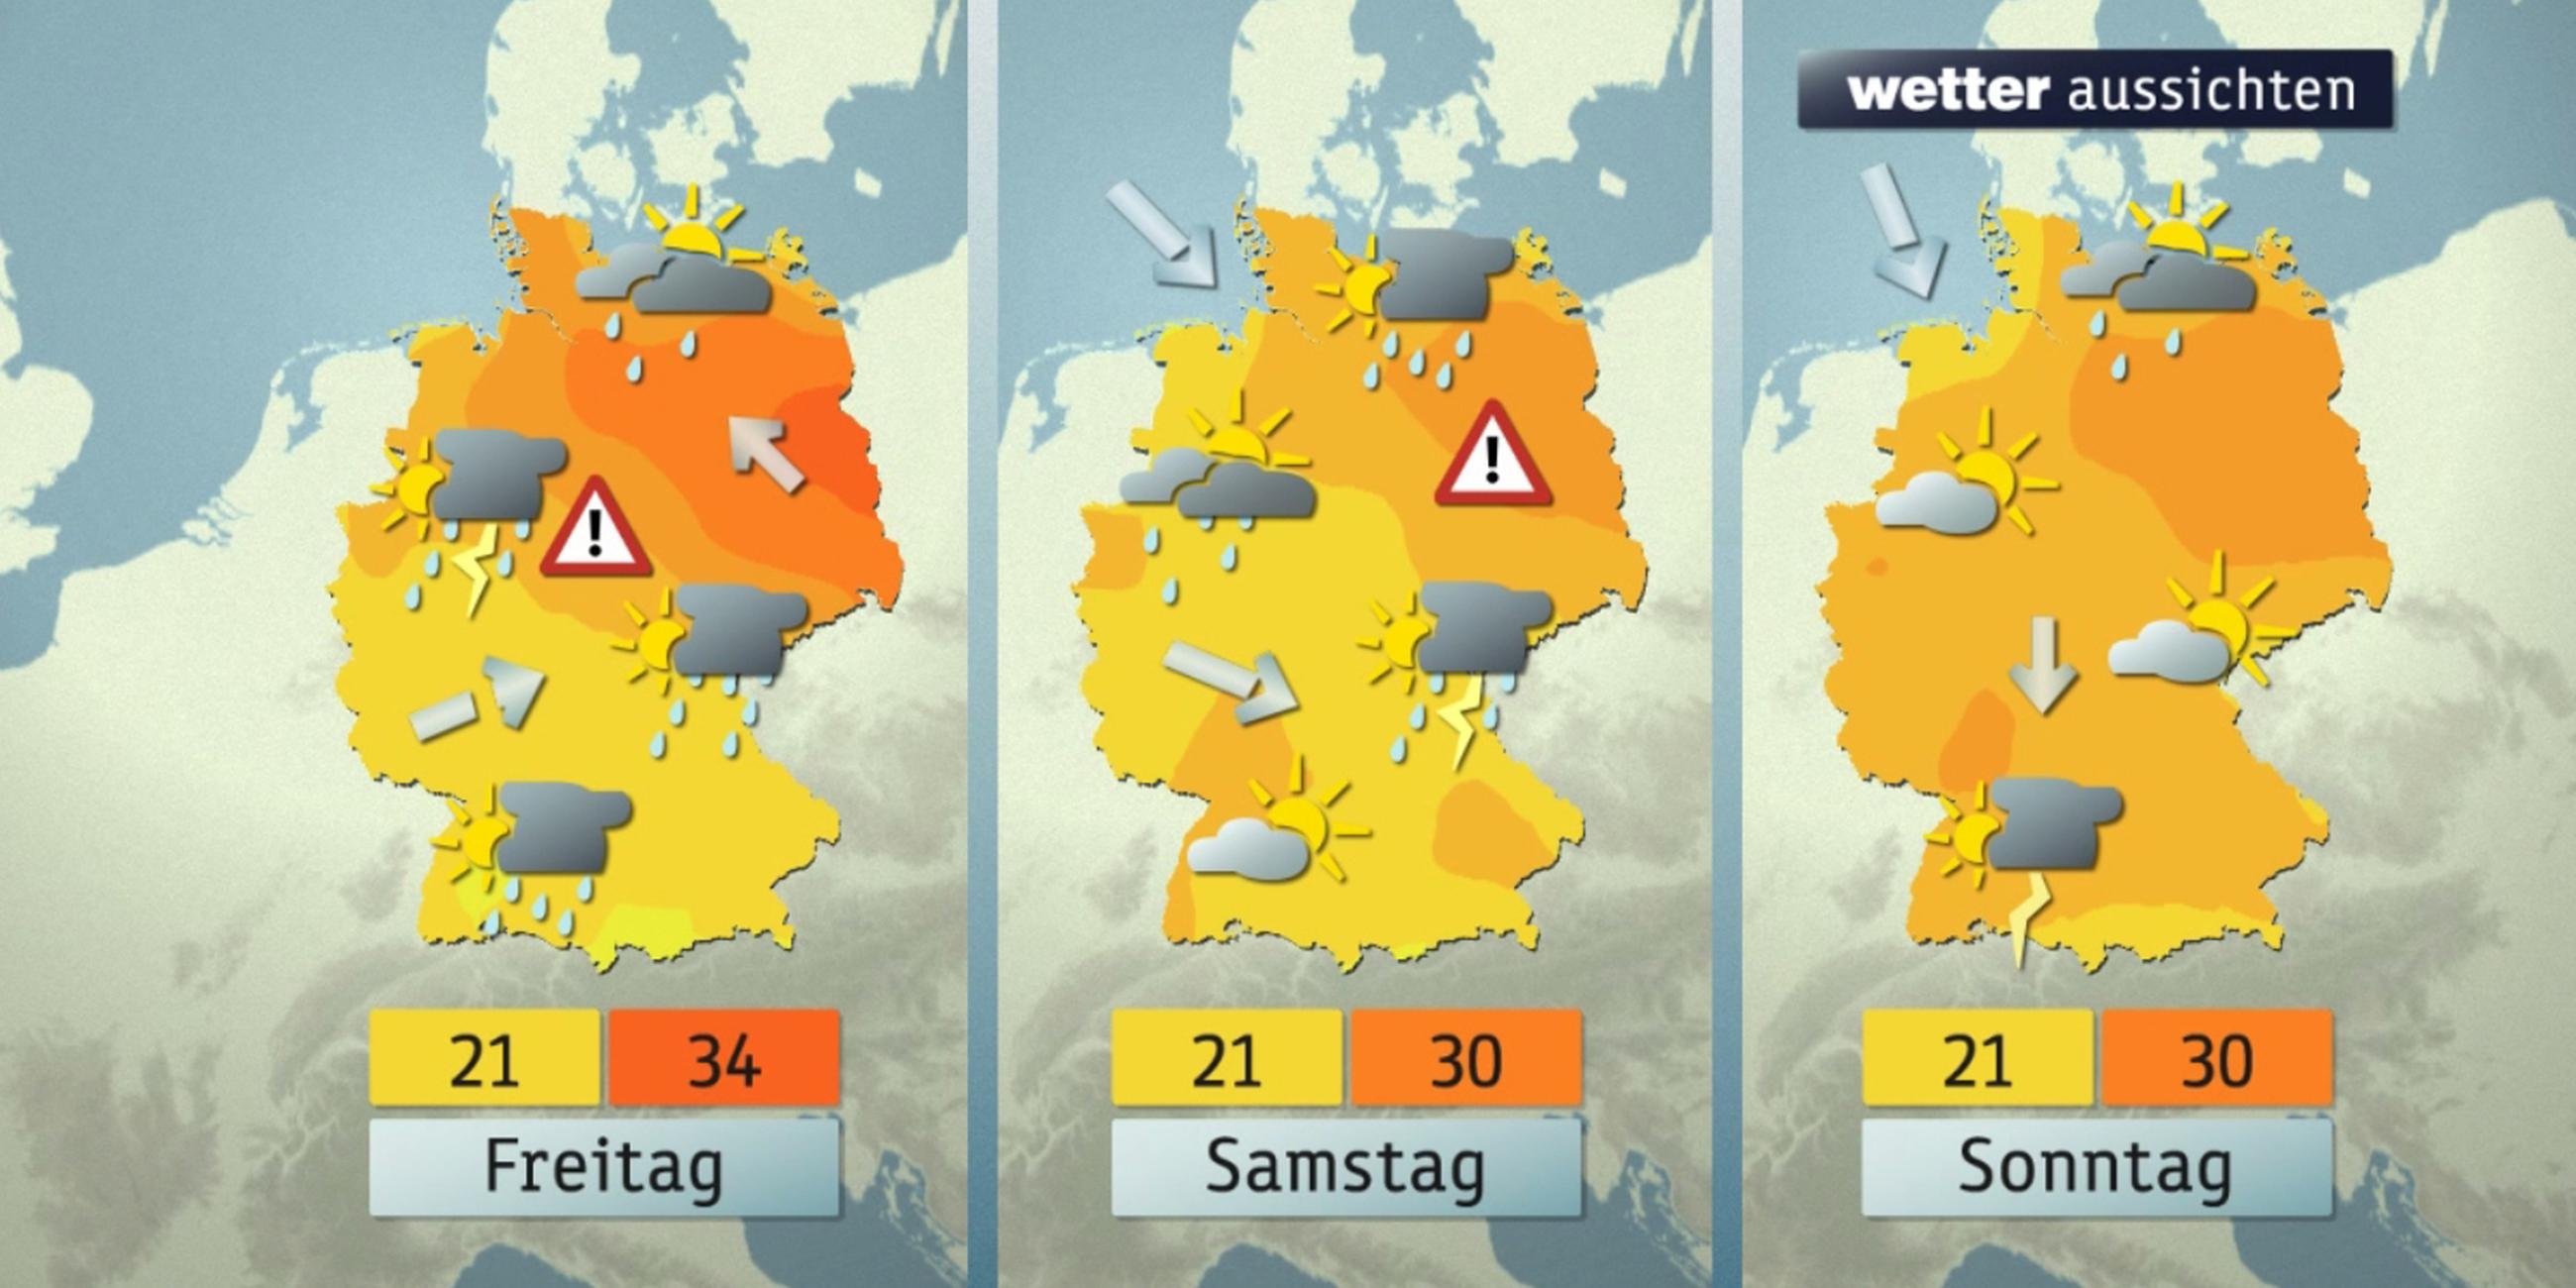 Wetteraussichten: Freitag, Samstag und Sonntag (01.06 bis 03.06.)